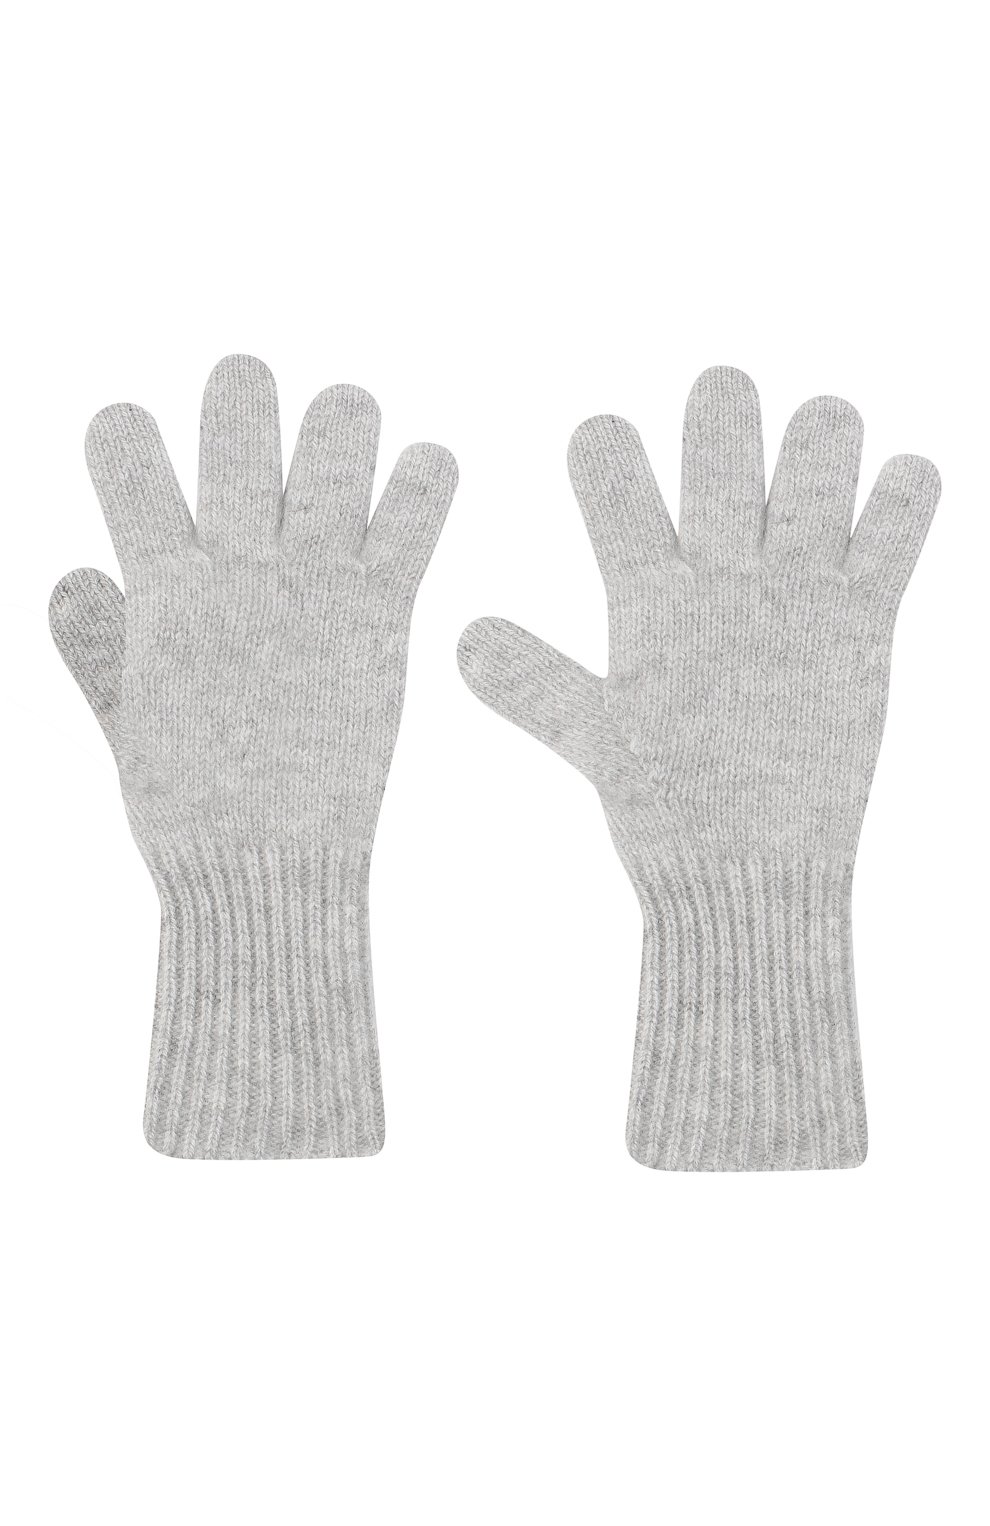 Детские кашемировые перчатки GIORGETTI CASHMERE светло-серого цвета, арт. MB1699/8A | Фото 2 (Материал: Текстиль, Кашемир, Шерсть)